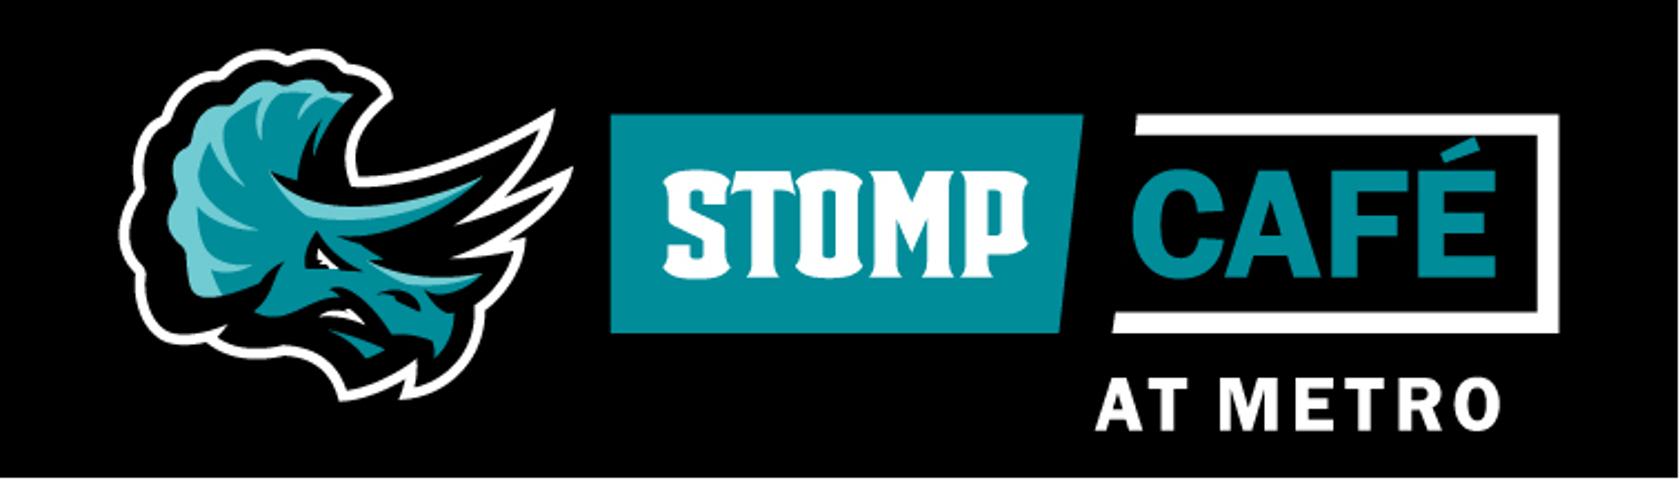 Stomp Cafe at Metro